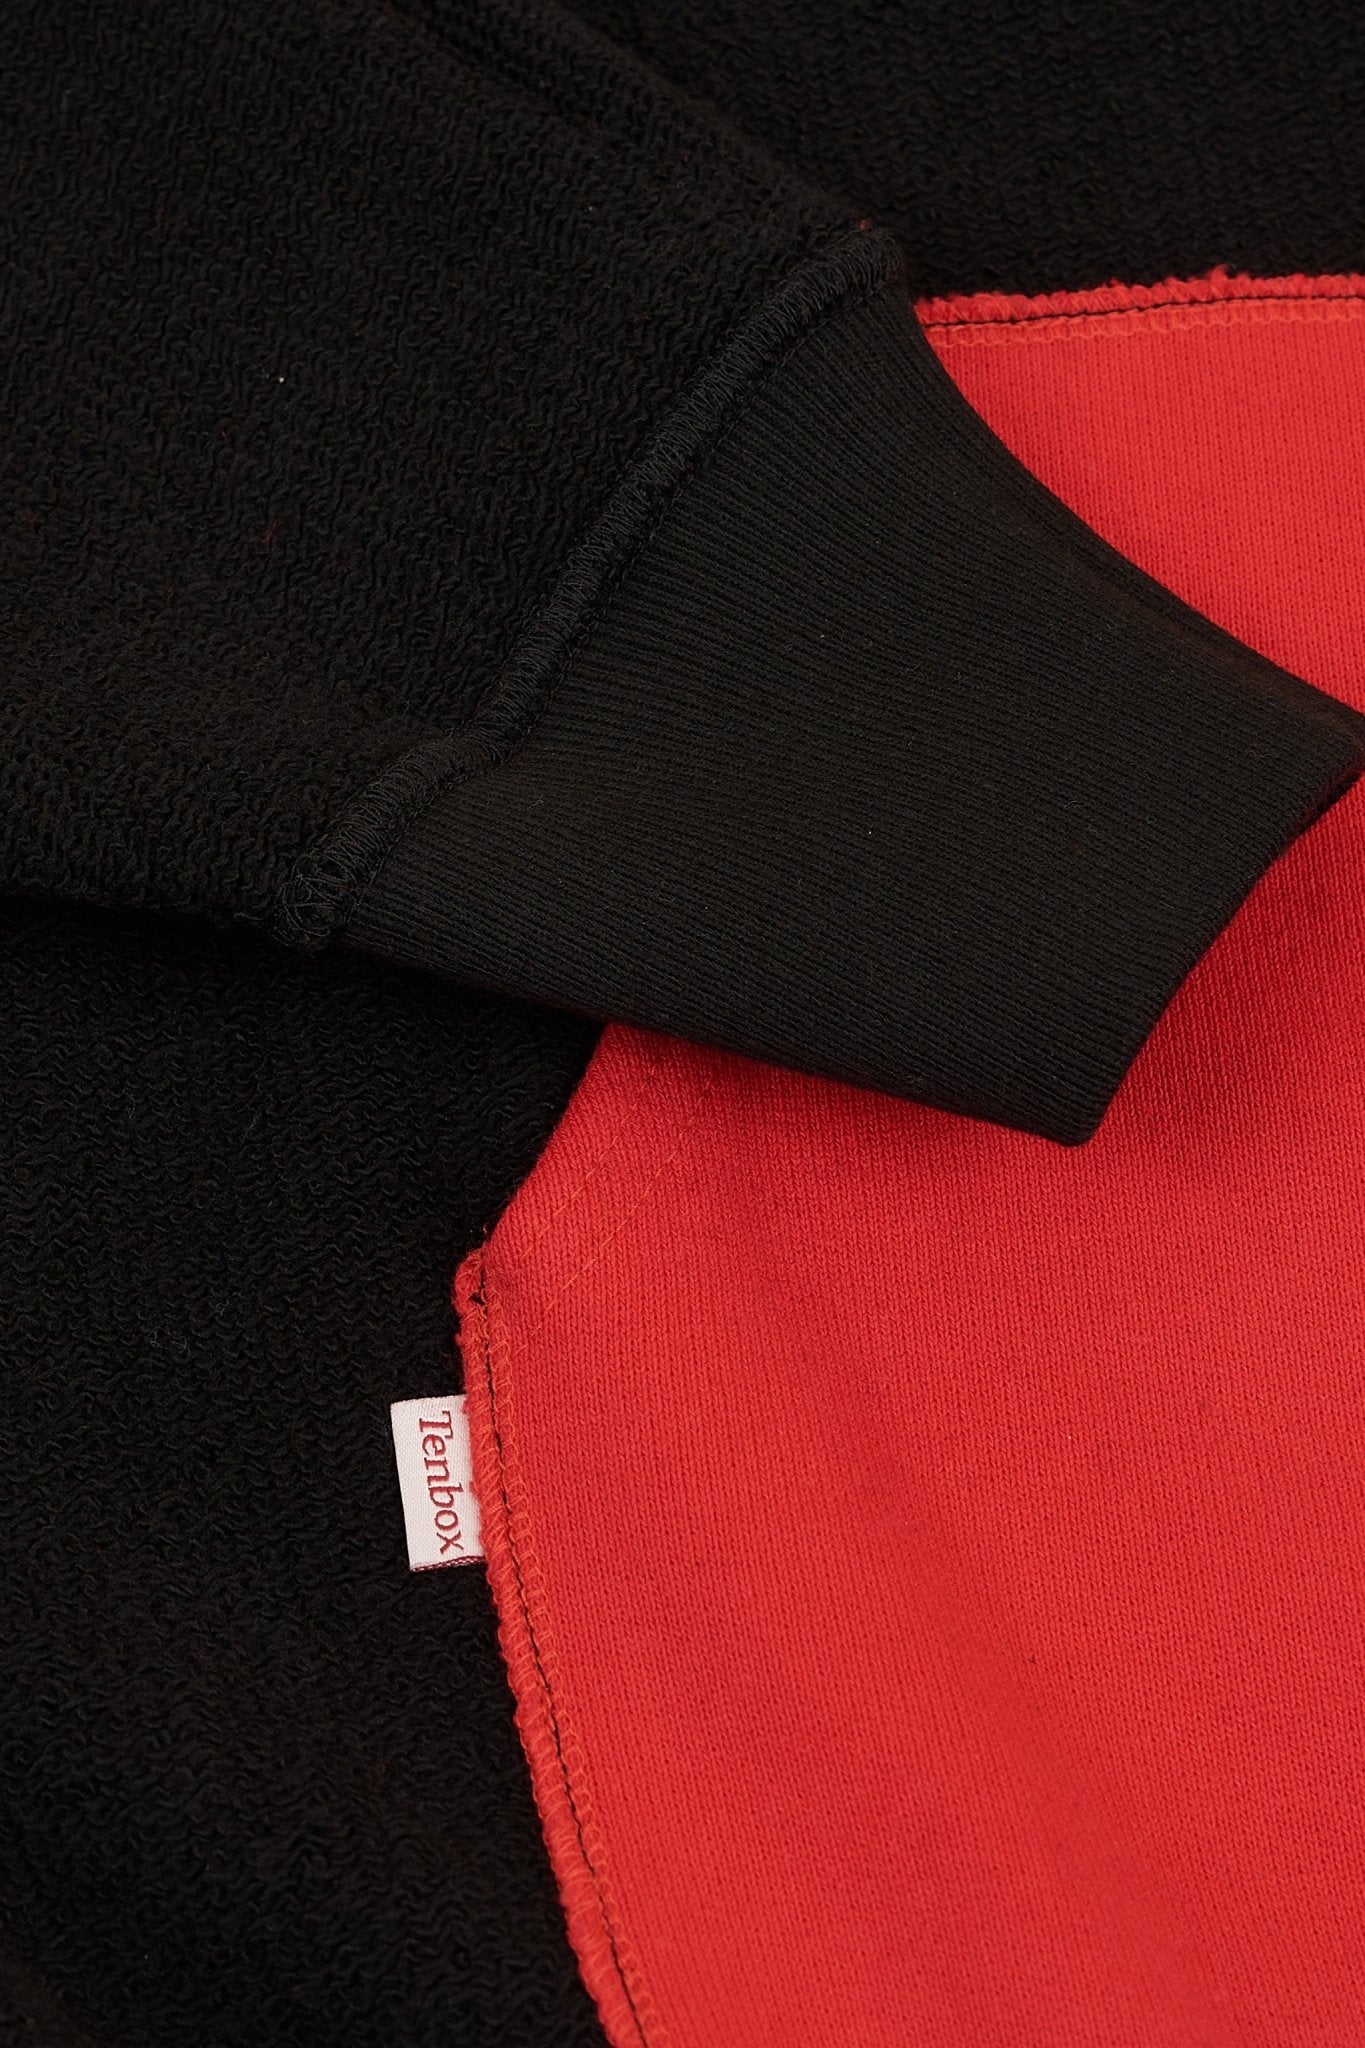 TENBOX Reversible Hooded Sweatshirt - Black / Red -Tenbox - URAHARA